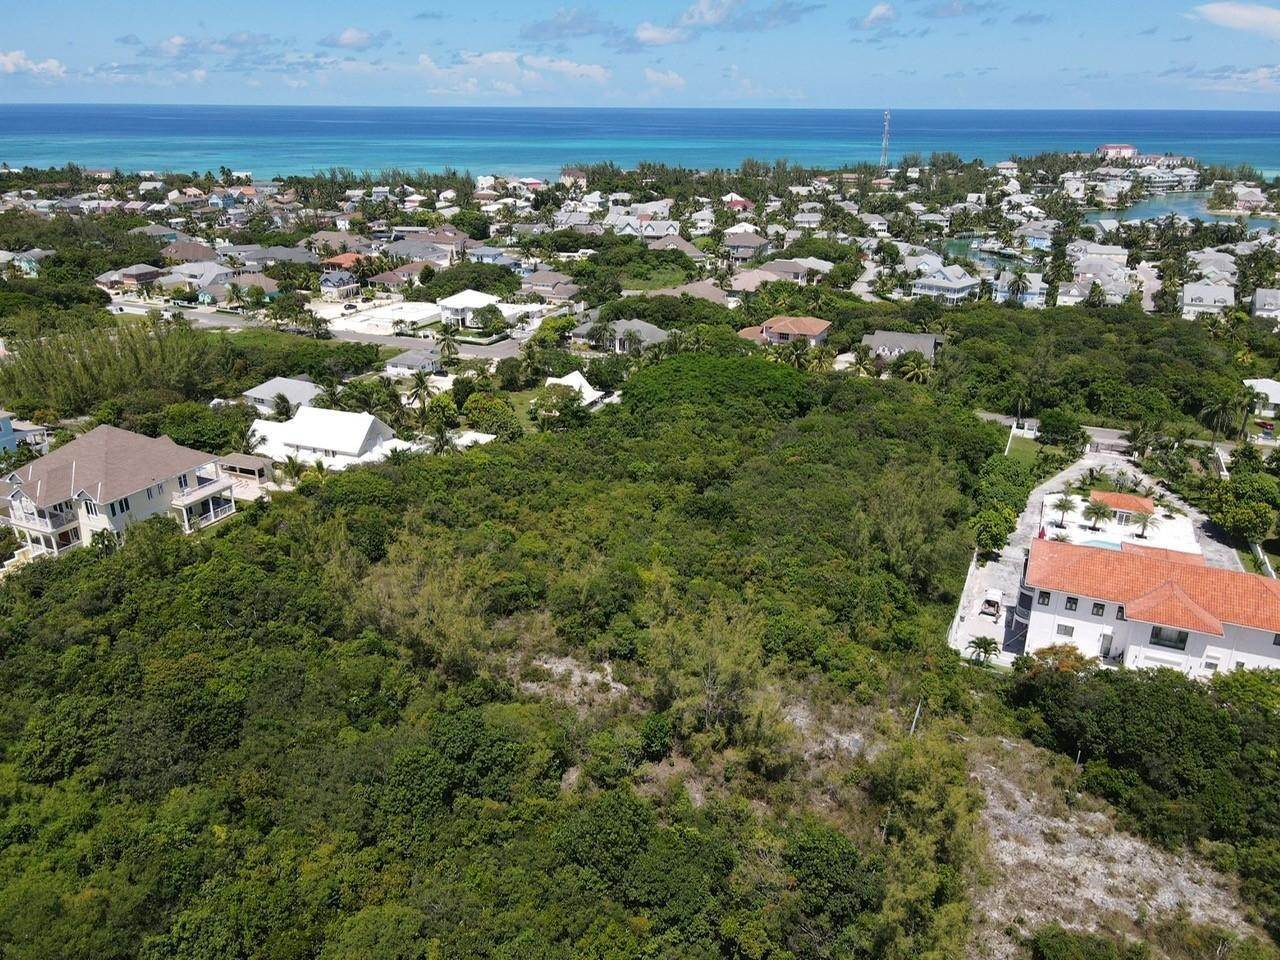 6. Lots / Acreage for Sale at Westridge Estates, Westridge, Nassau and Paradise Island, Bahamas